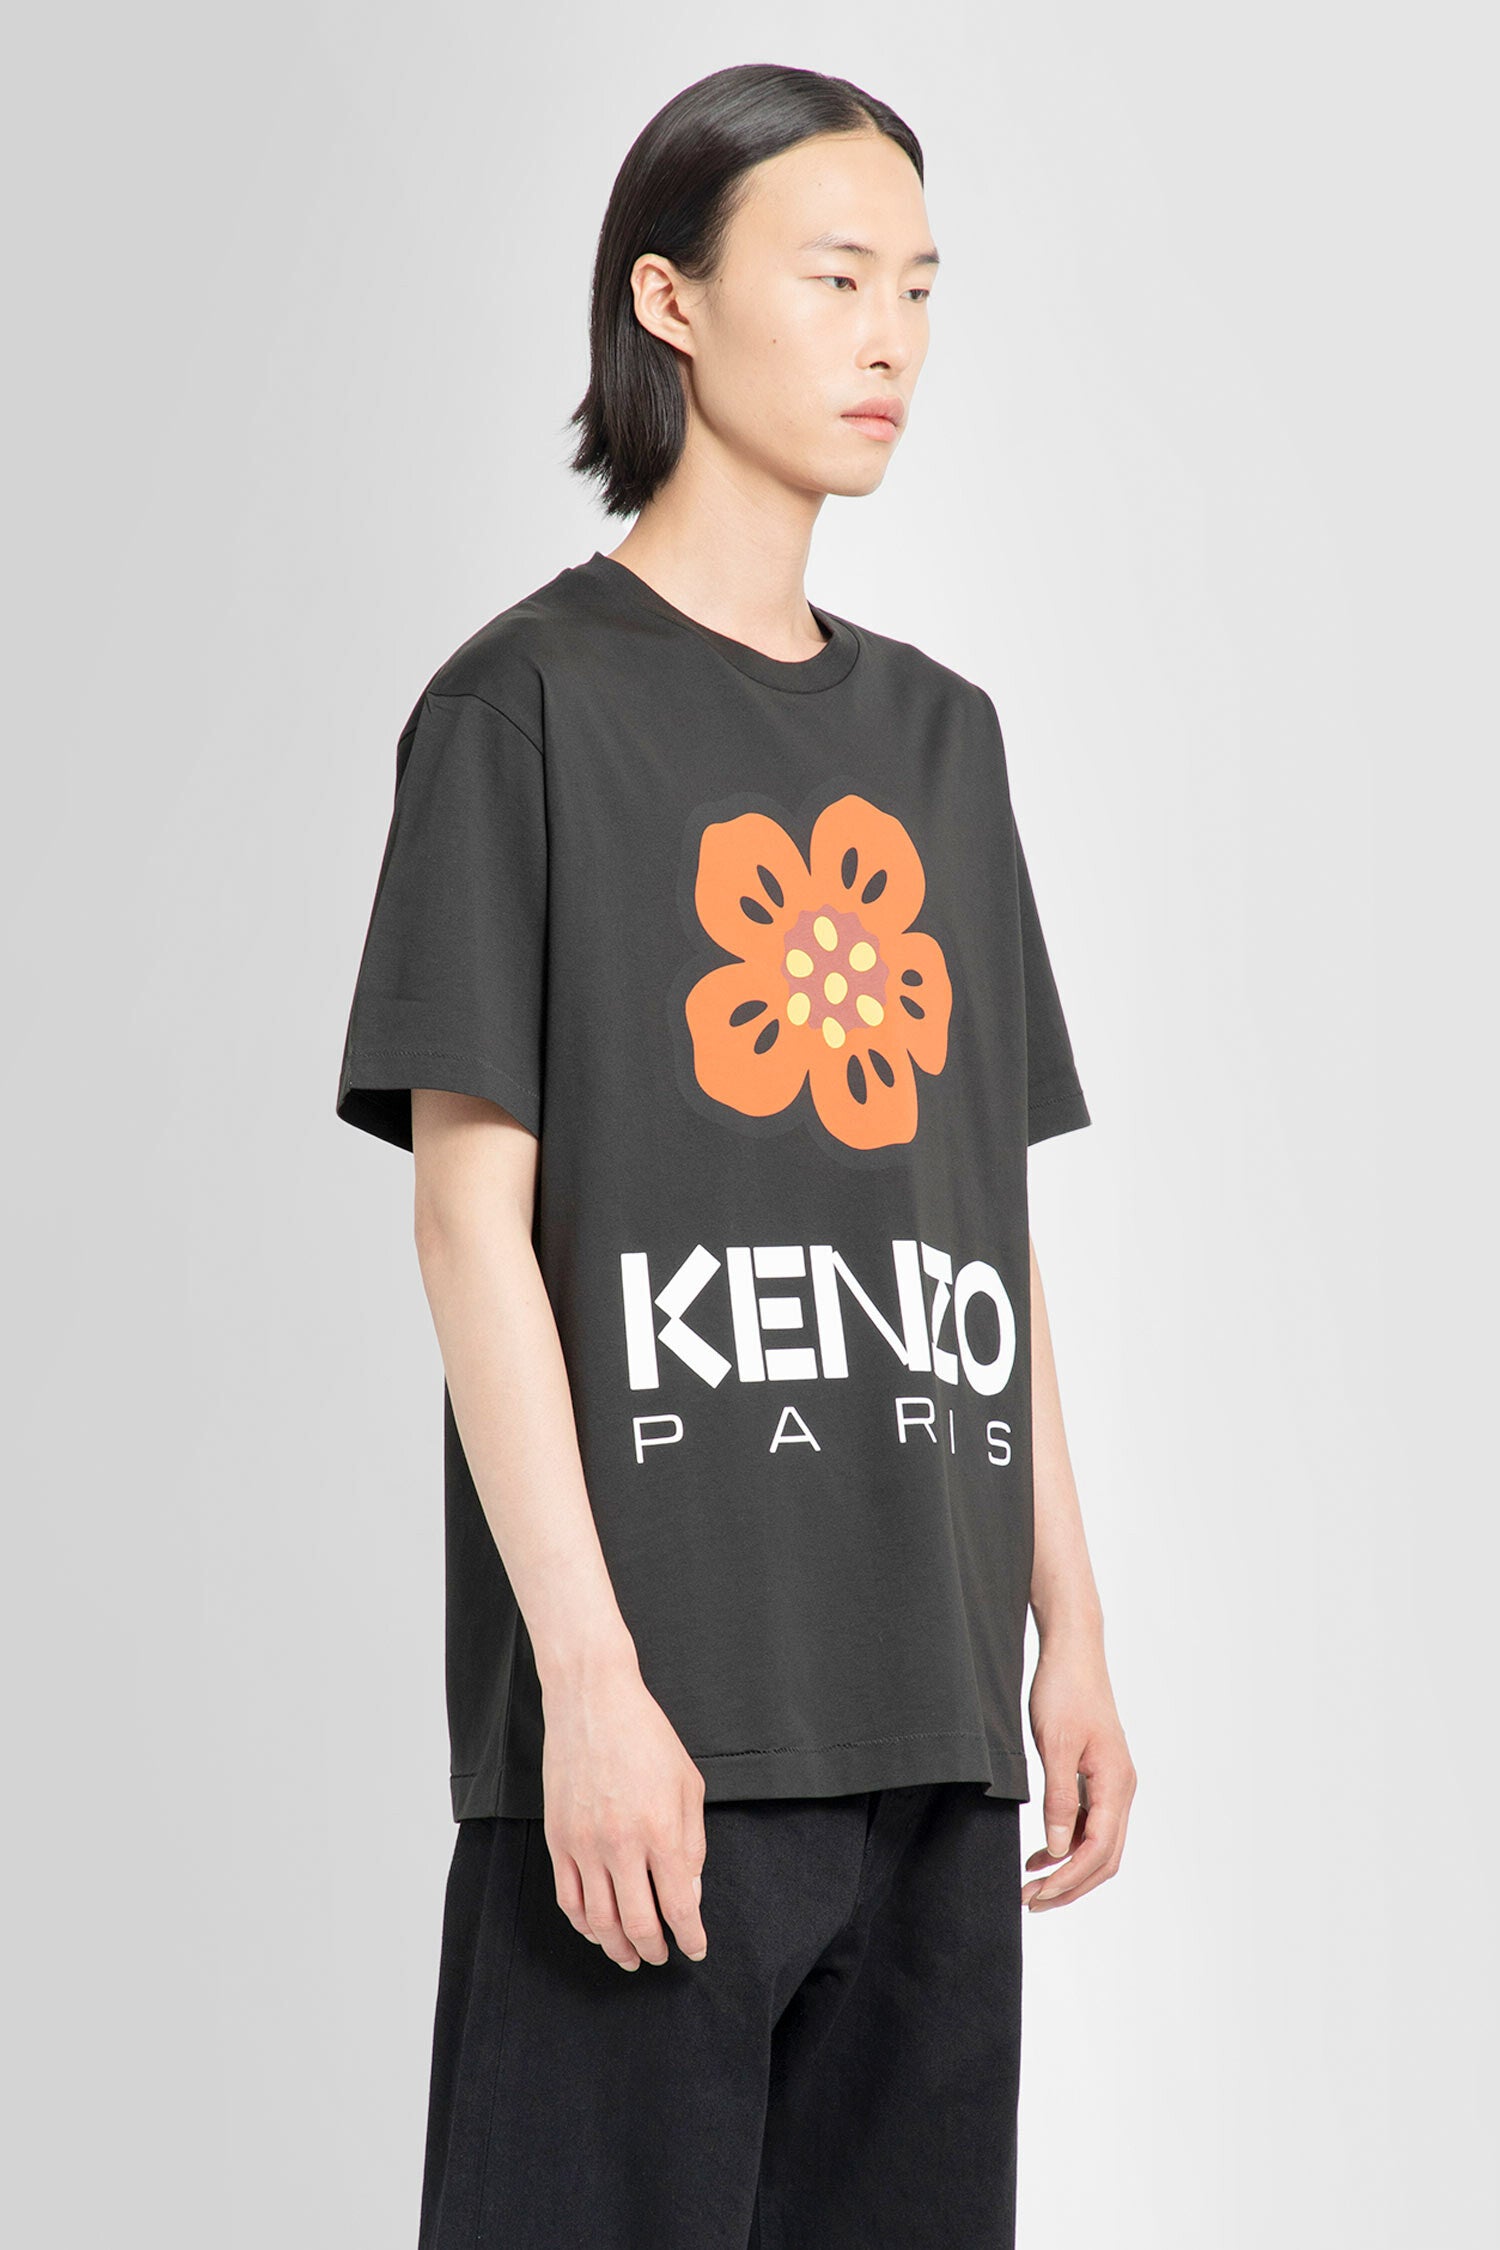 KENZO BY NIGO MAN BLACK T-SHIRTS - KENZO BY NIGO - T-SHIRTS